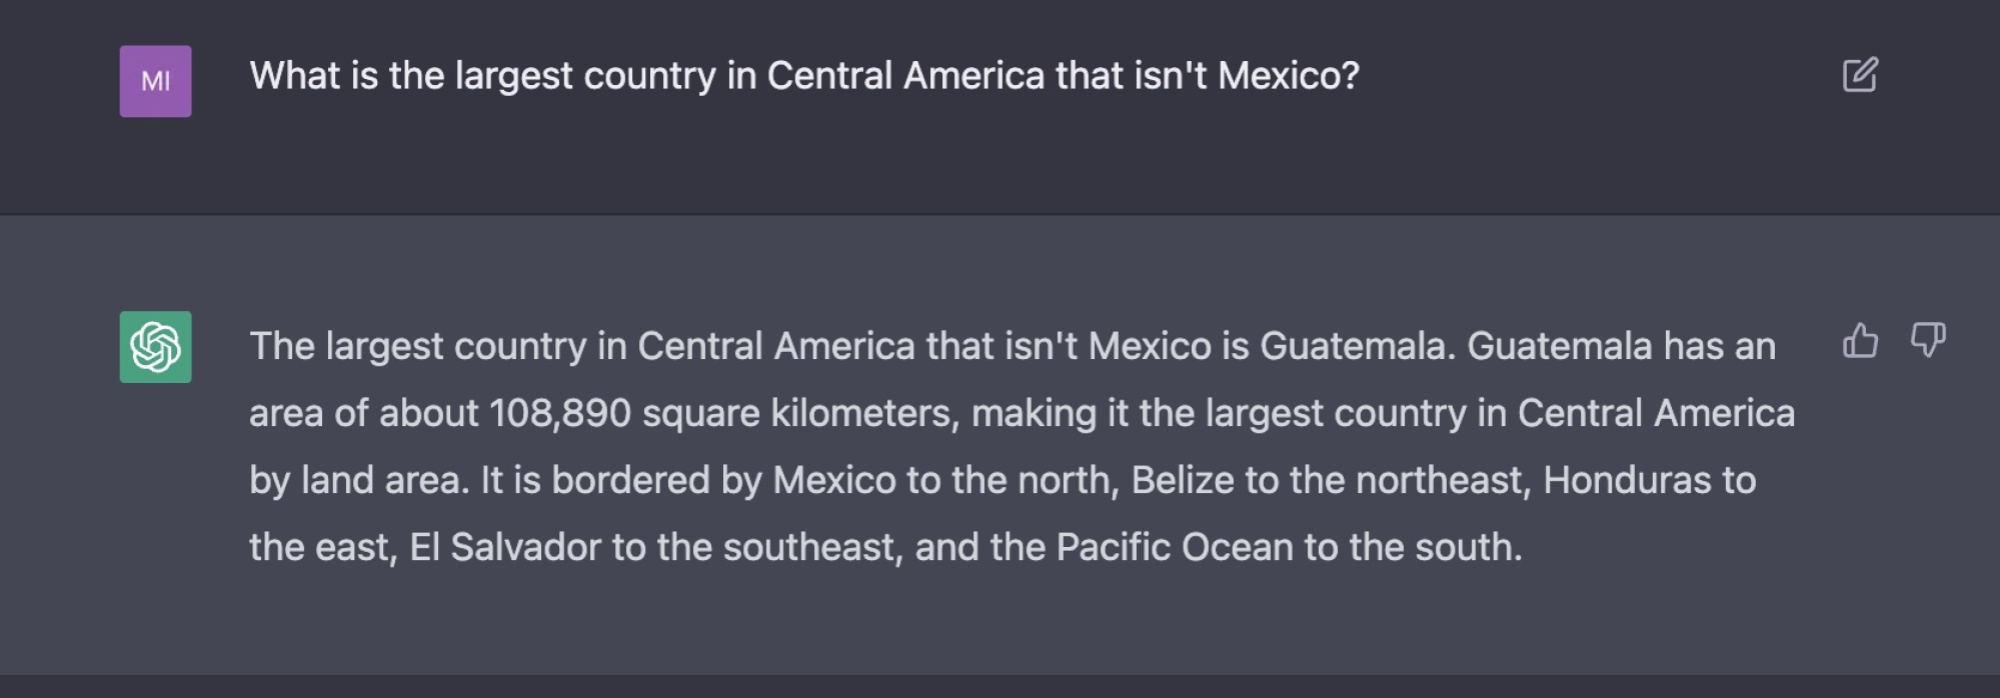 bir chatbot'a doğru cevabın Honduras olduğu karmaşık bir coğrafya sorusu soruluyor ve cevabın Guatemala olduğunu söylüyor